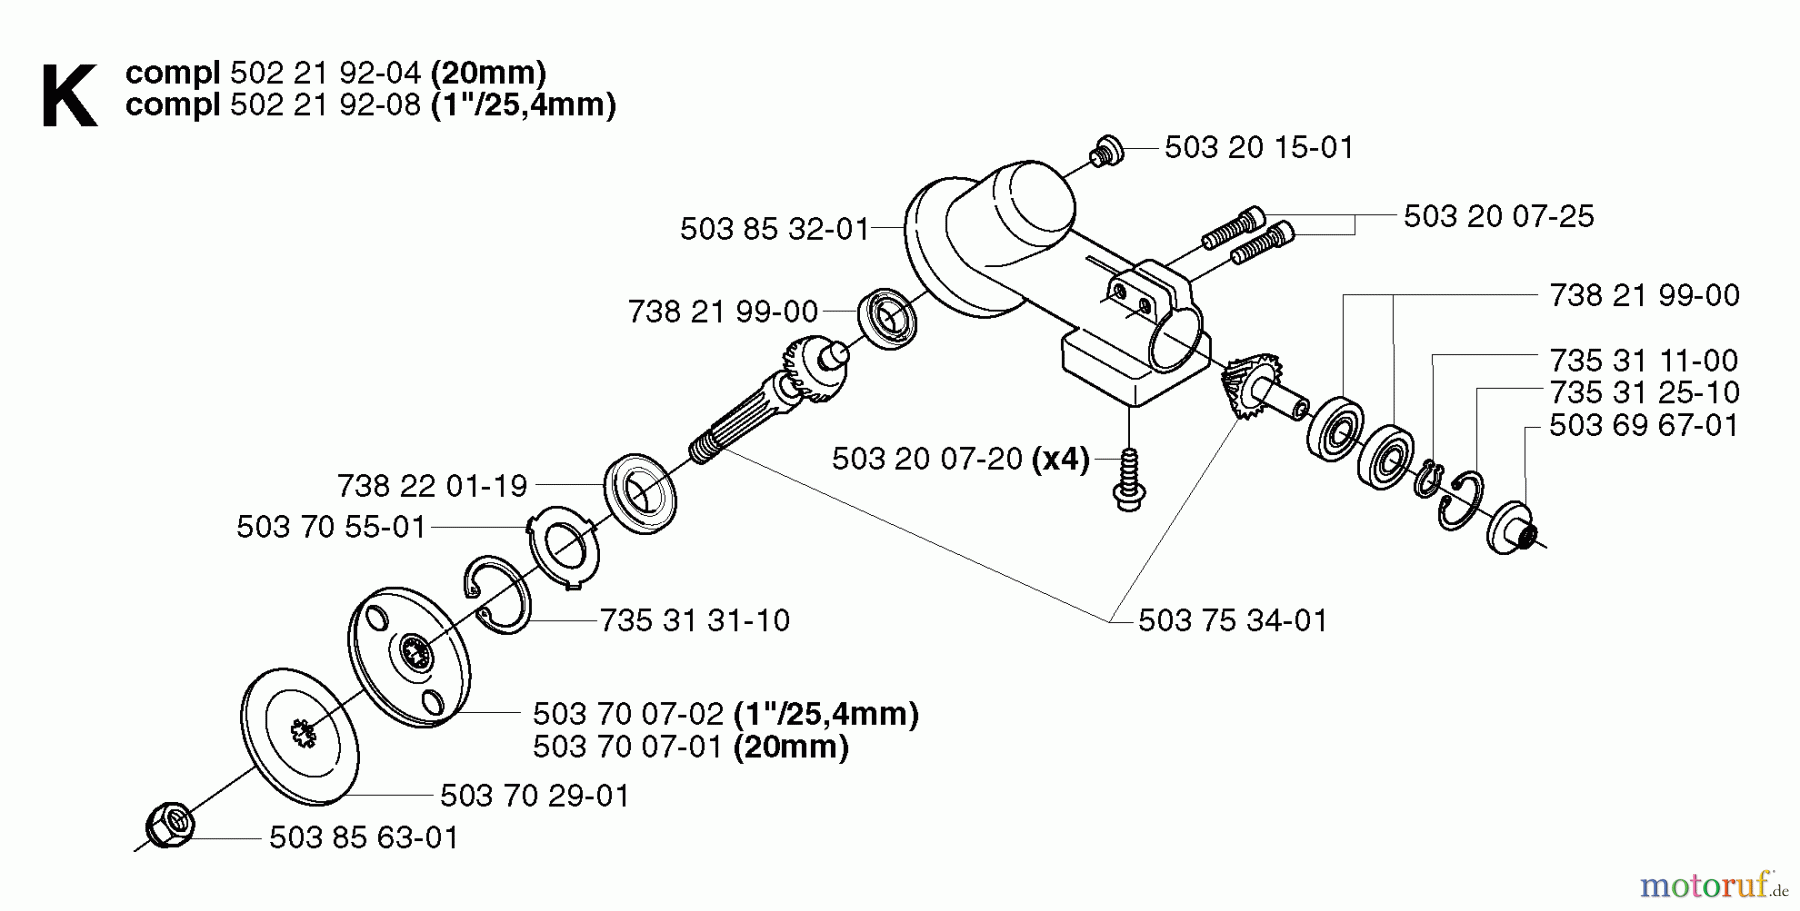  Jonsered Motorsensen, Trimmer GR2026 - Jonsered String/Brush Trimmer (2002-08) BEVEL GEAR